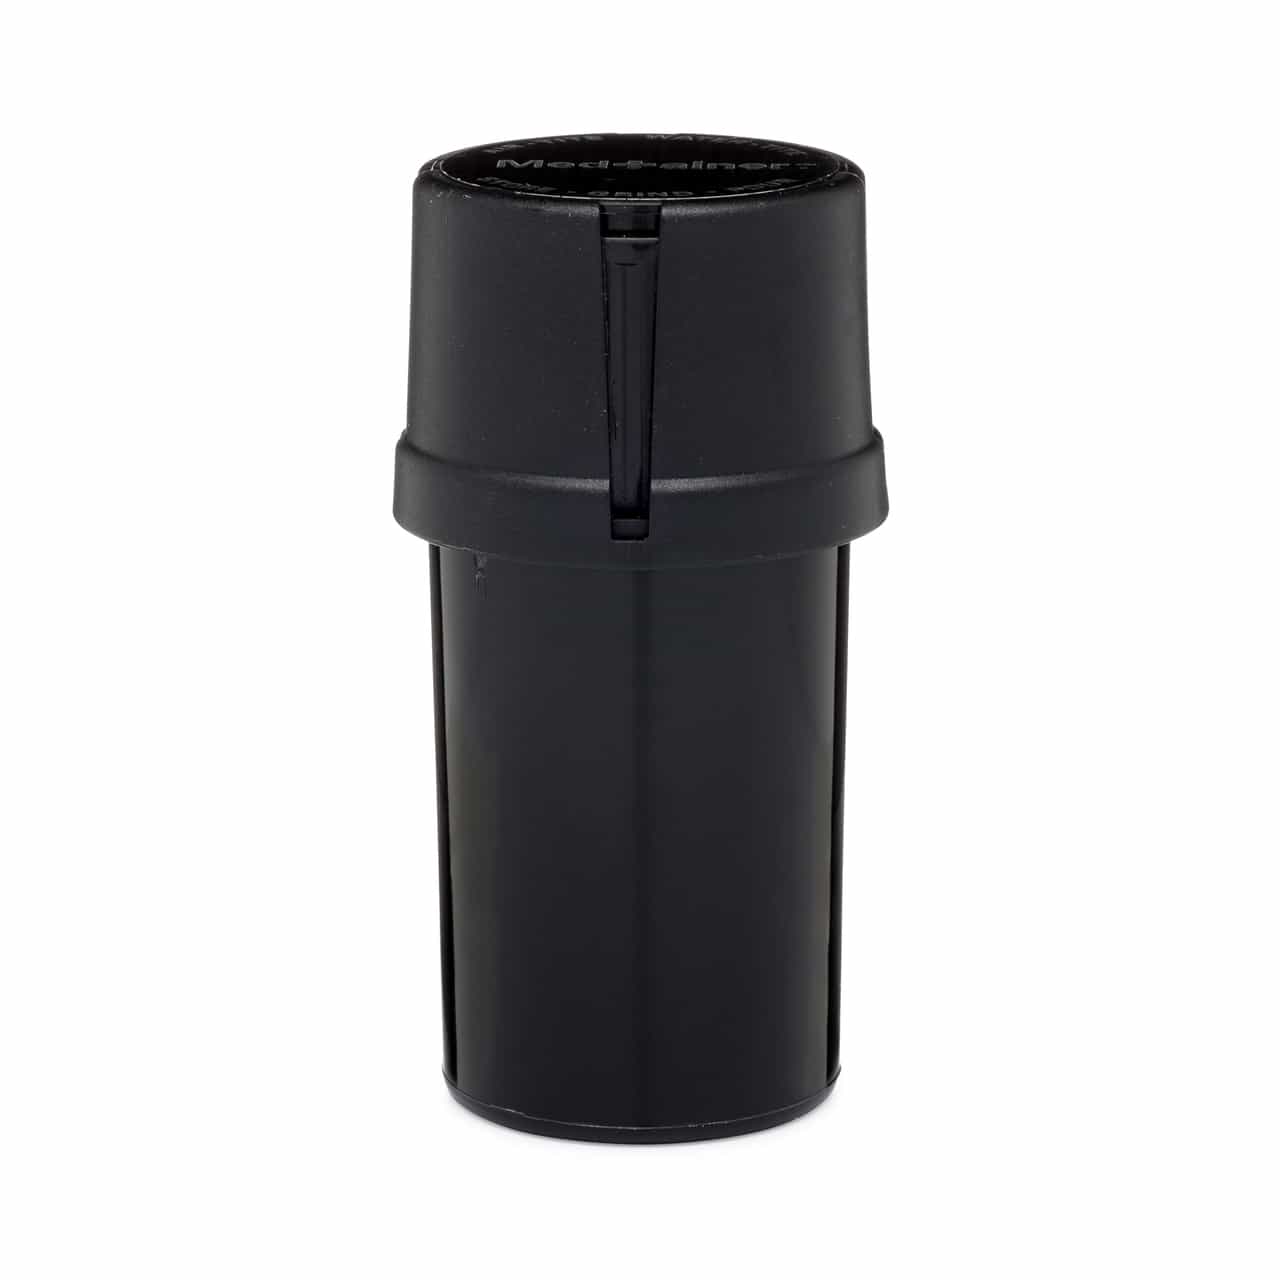 The Medtainer Storage w/ Grinder Large 40 Dram - Black